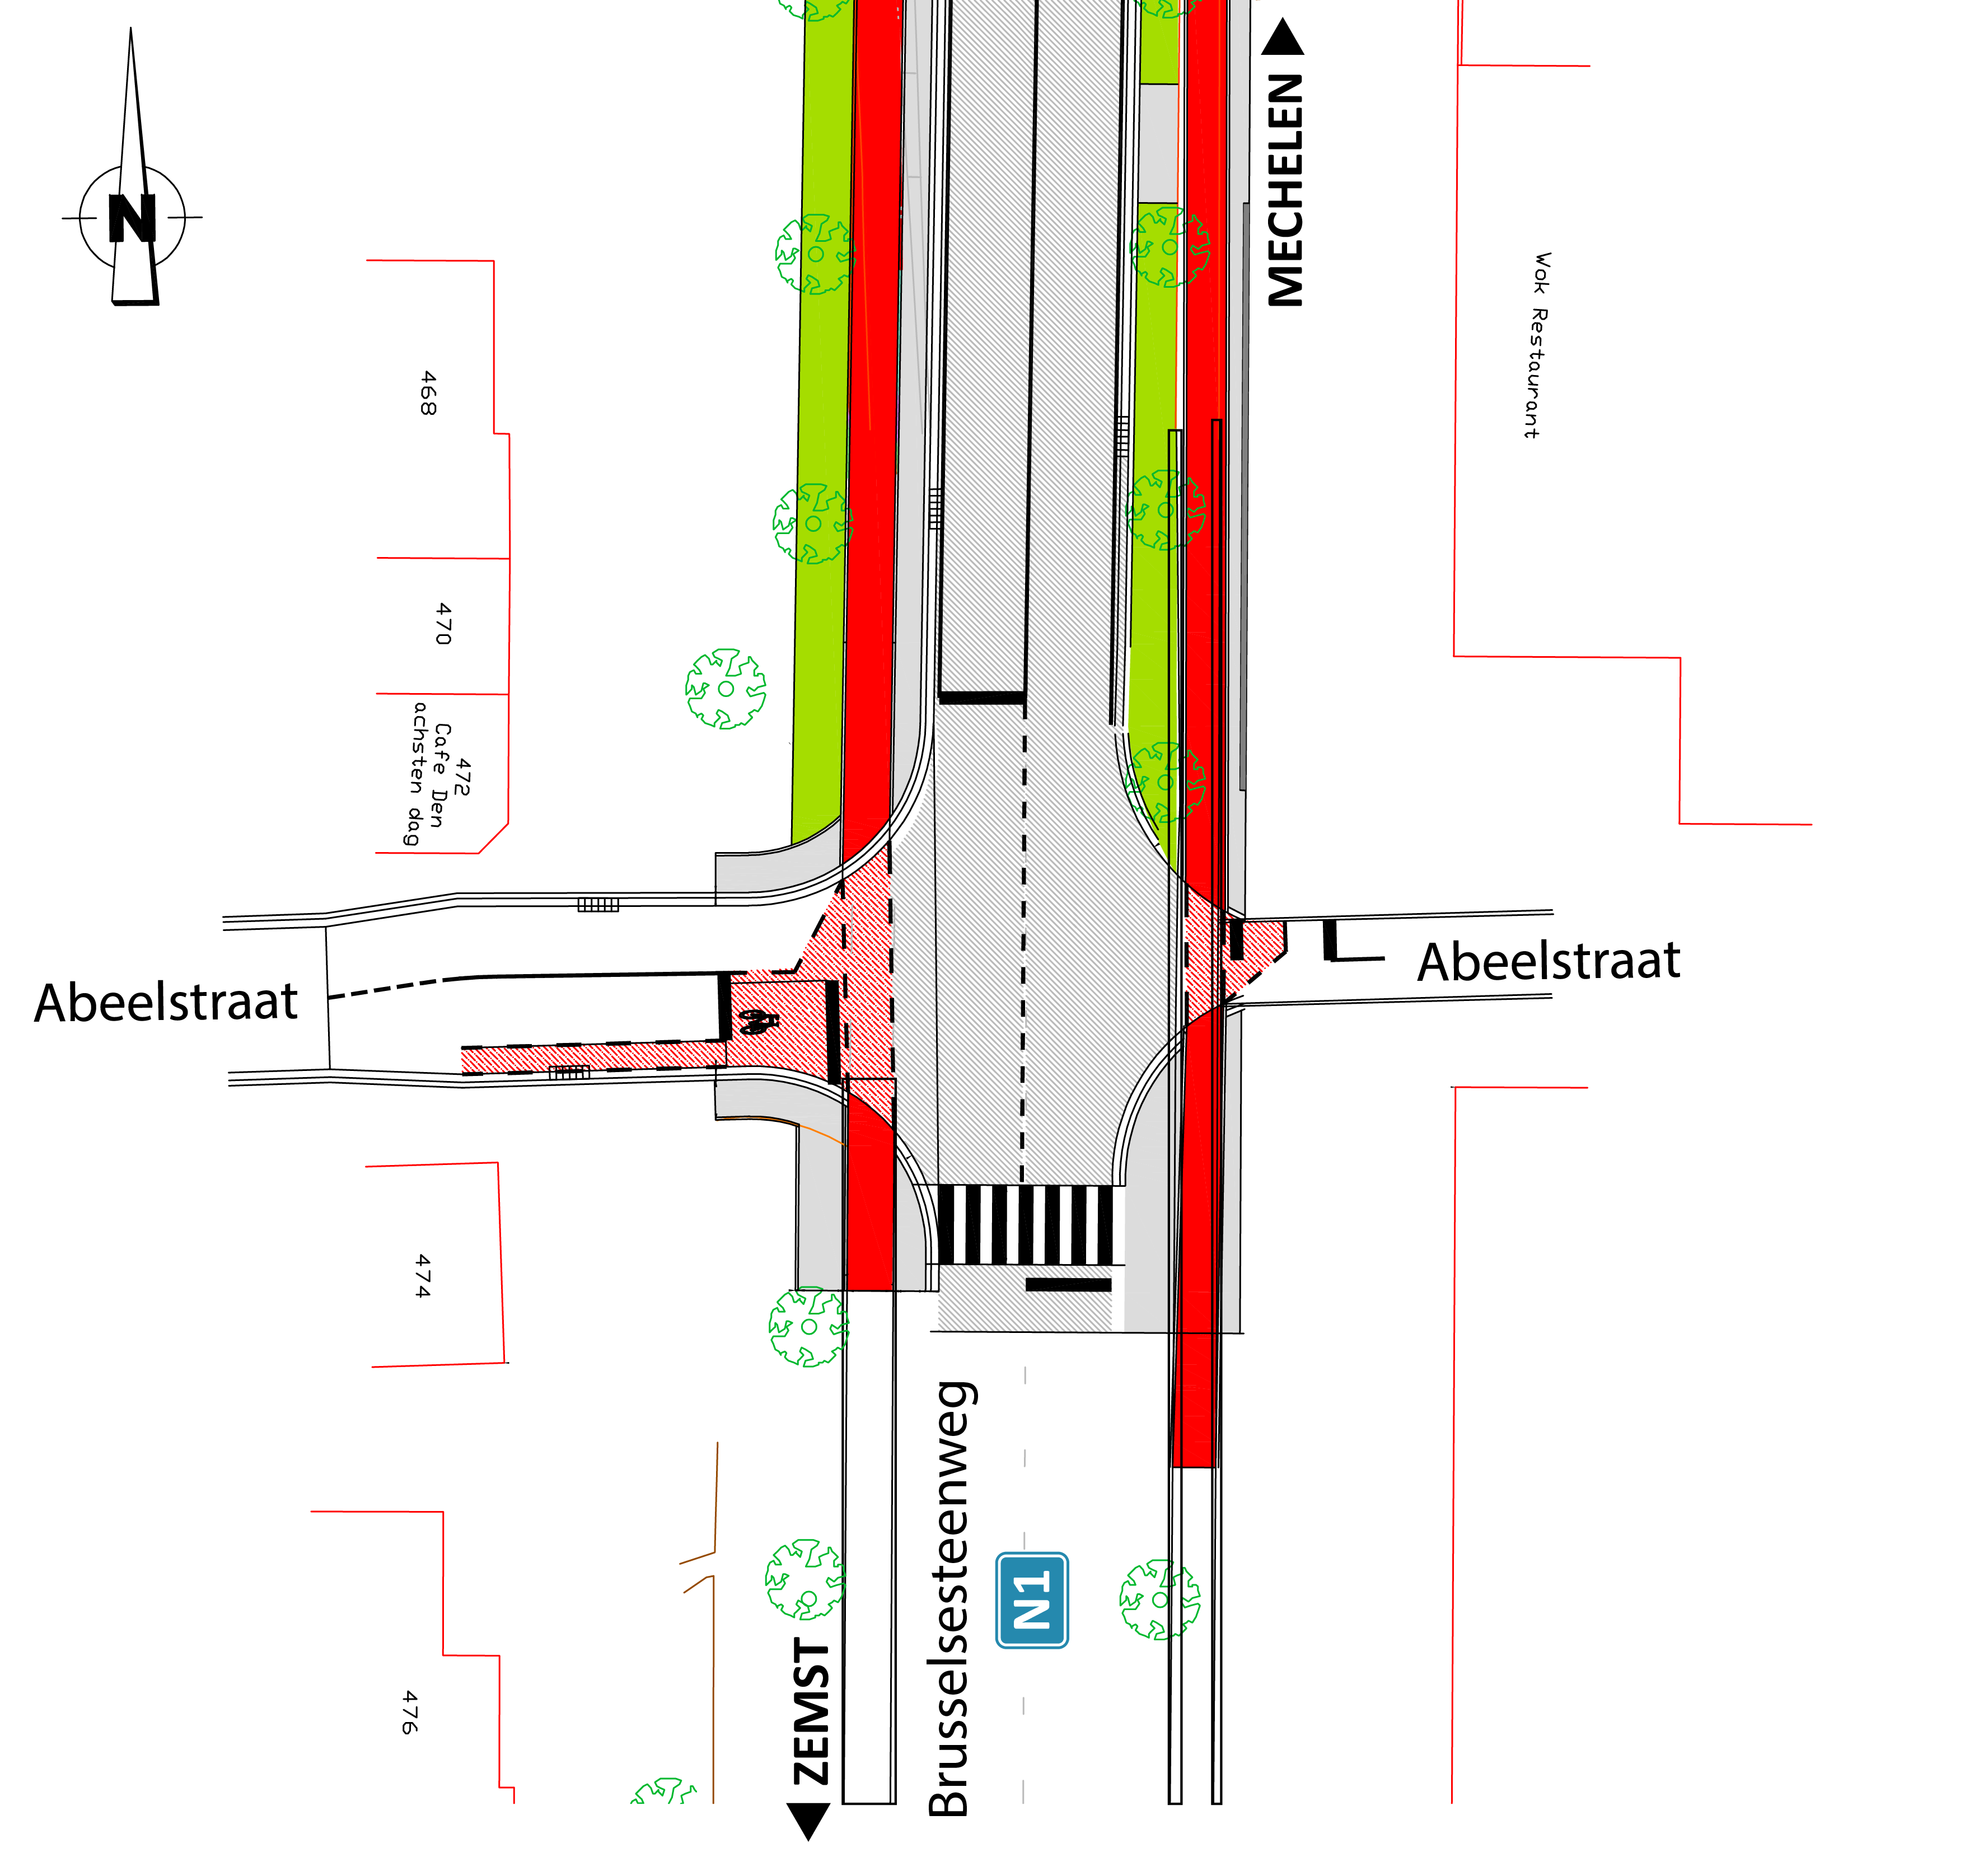 Brusselsesteenweg (N1) x Abeelstraat: het vereenvoudigd ontwerp